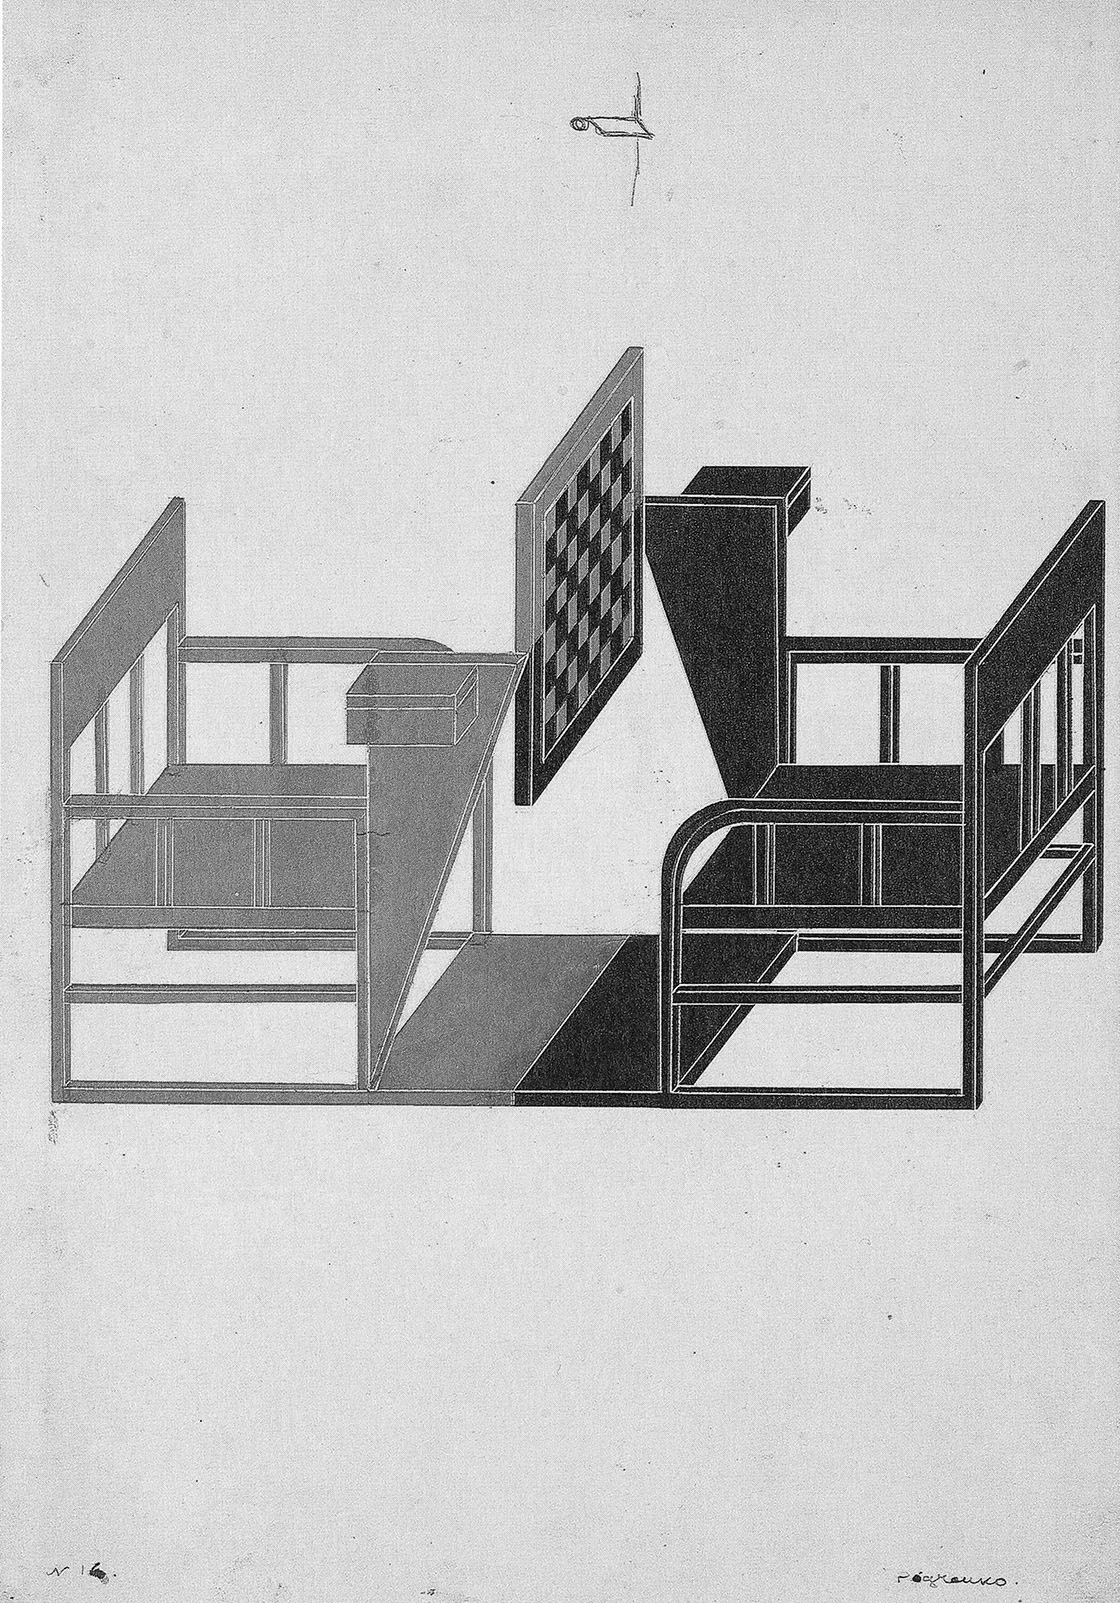 アレクサンドル・ロトチェンコ『チェス台』（「労働者クラブの設備の設計」シリーズ）1925年